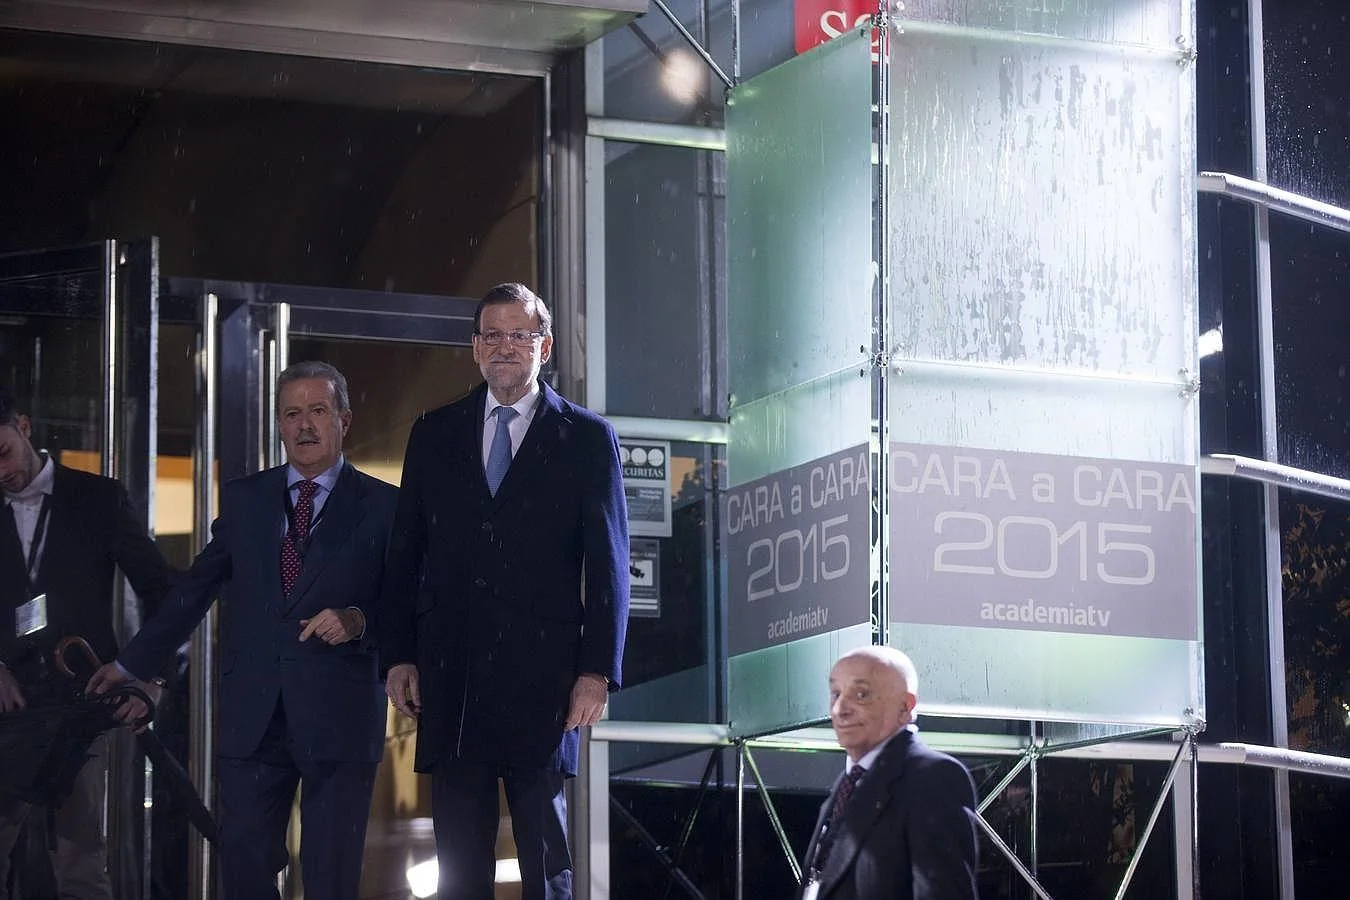 Mariano Rajoy, candidato del PP y actual presidente del Gobierno, llega al Cara a Cara de la Escuela de Cinematografía